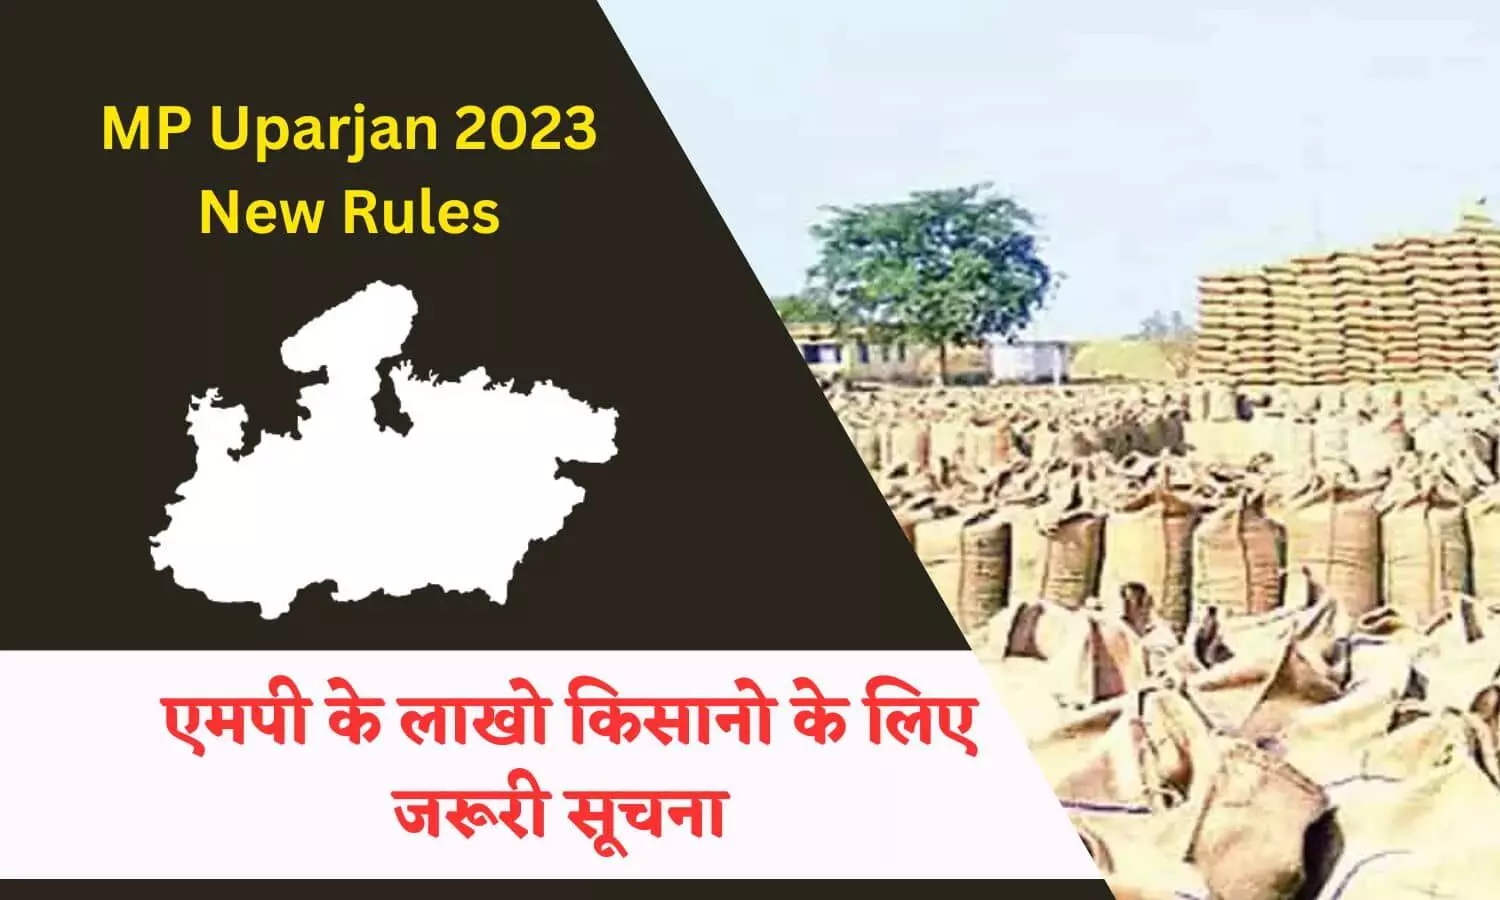 MP Uparjan 2023 In Hindi